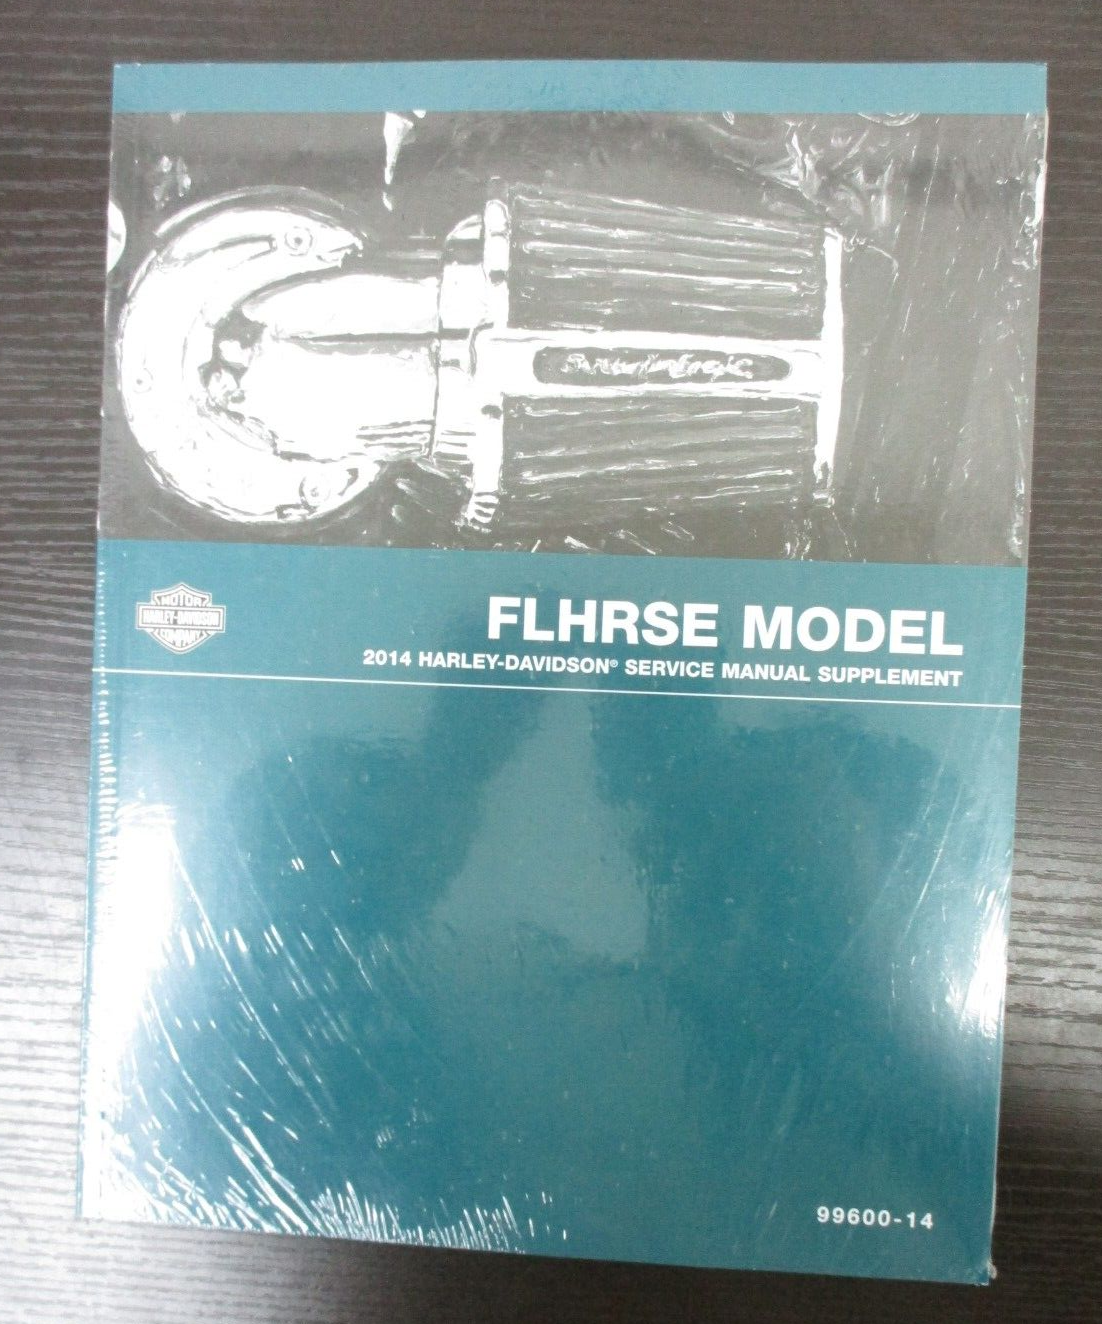 Harley-Davidson 2014 FLHRSE Model Service Manual Supplement 99600-14